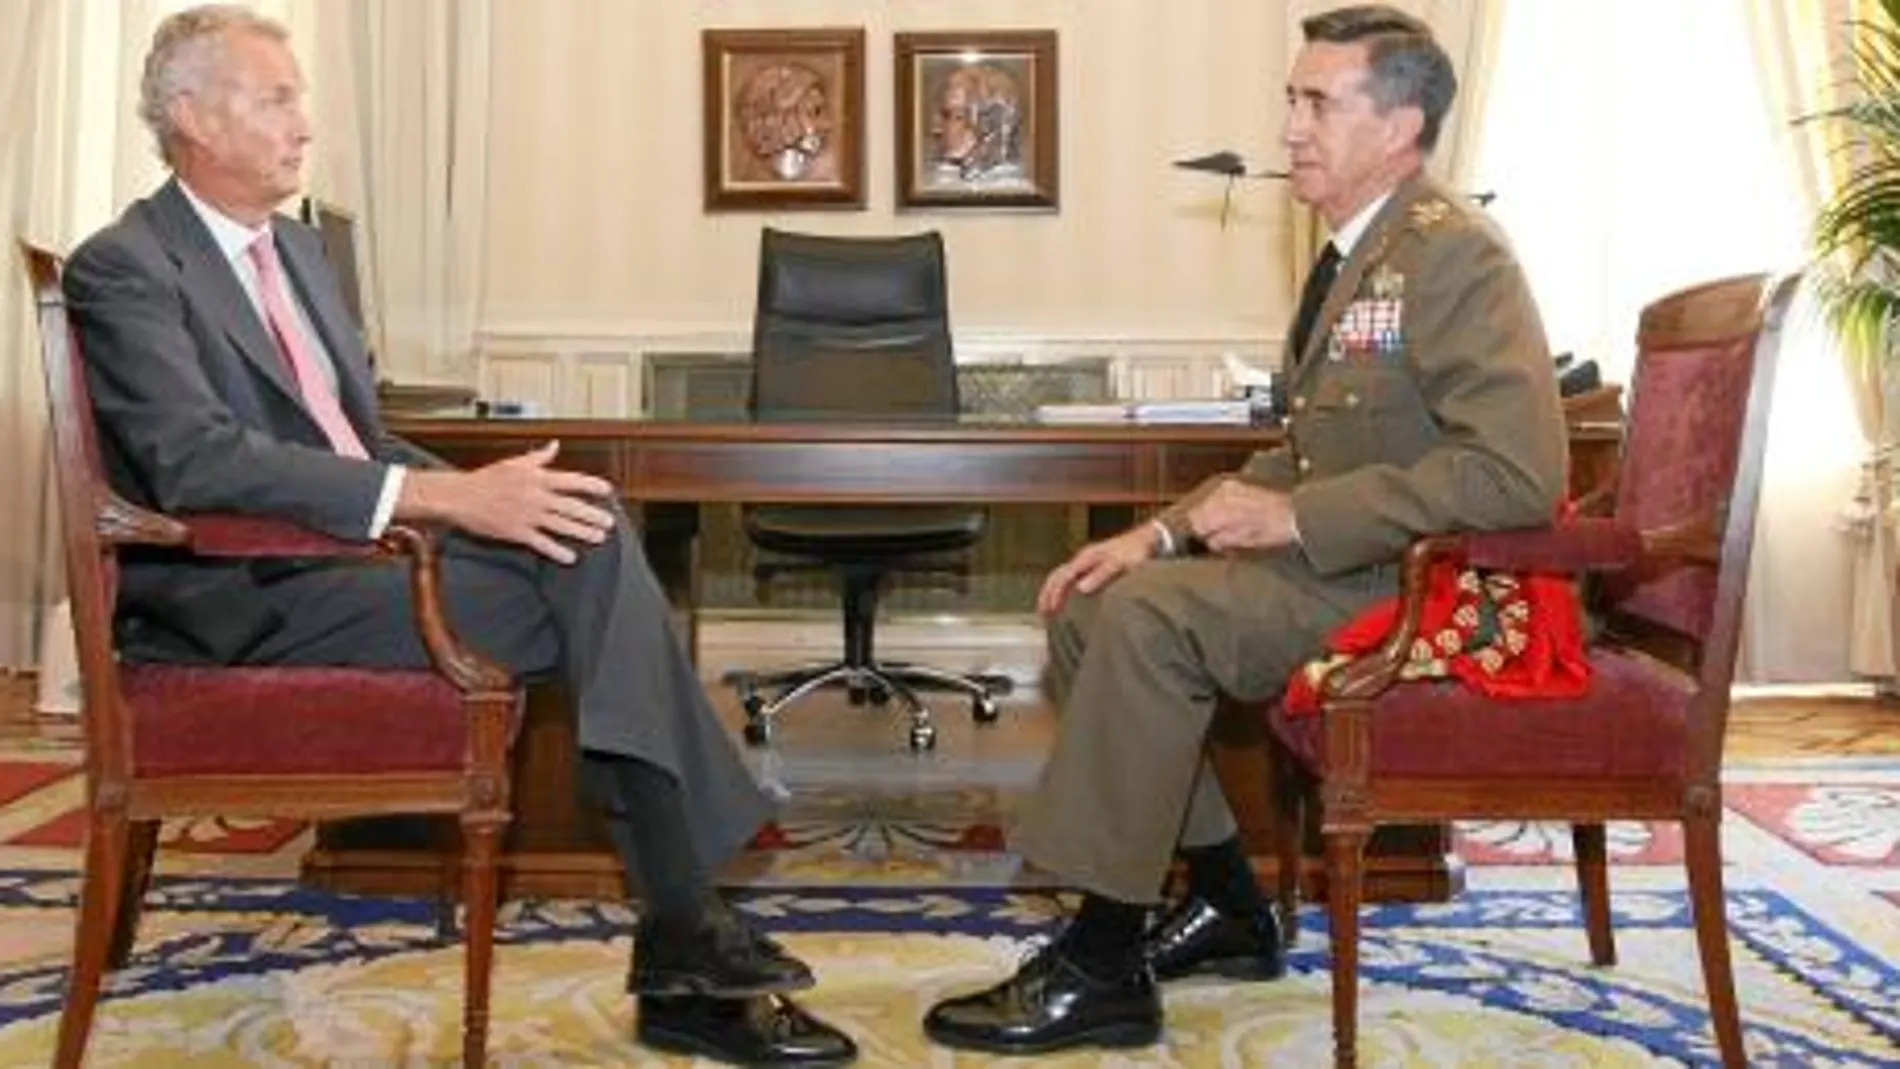 El nuevo Jefe del Estado Mayor del Ejército, el general Jaime Domínguez Buj, conversa con el ministro Pedro Morenés tras tomar posesión de su cargo